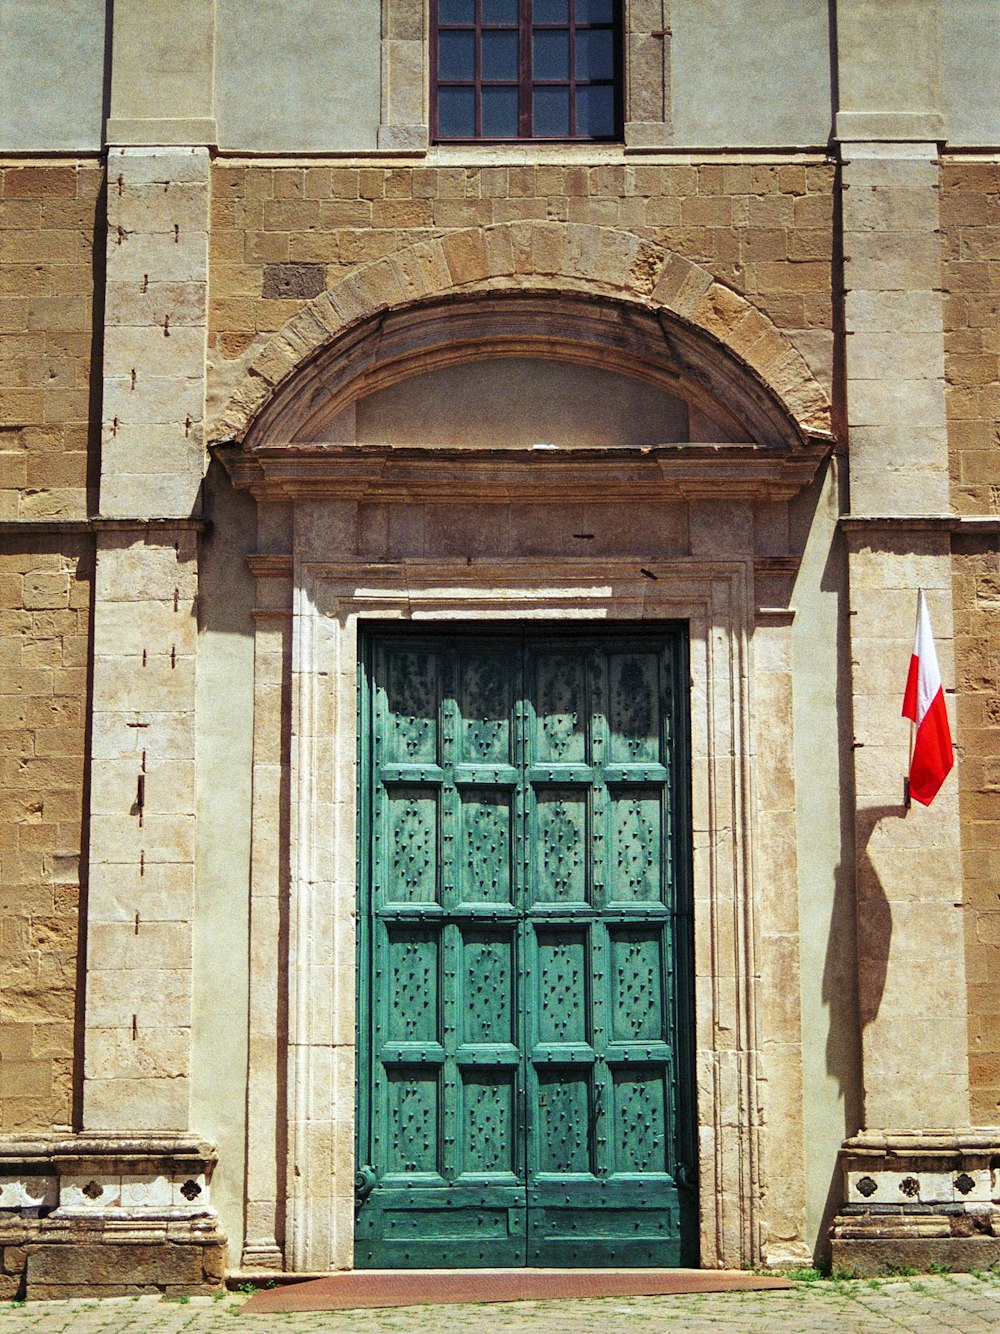 緑のドアとカナダの国旗がある古い建物